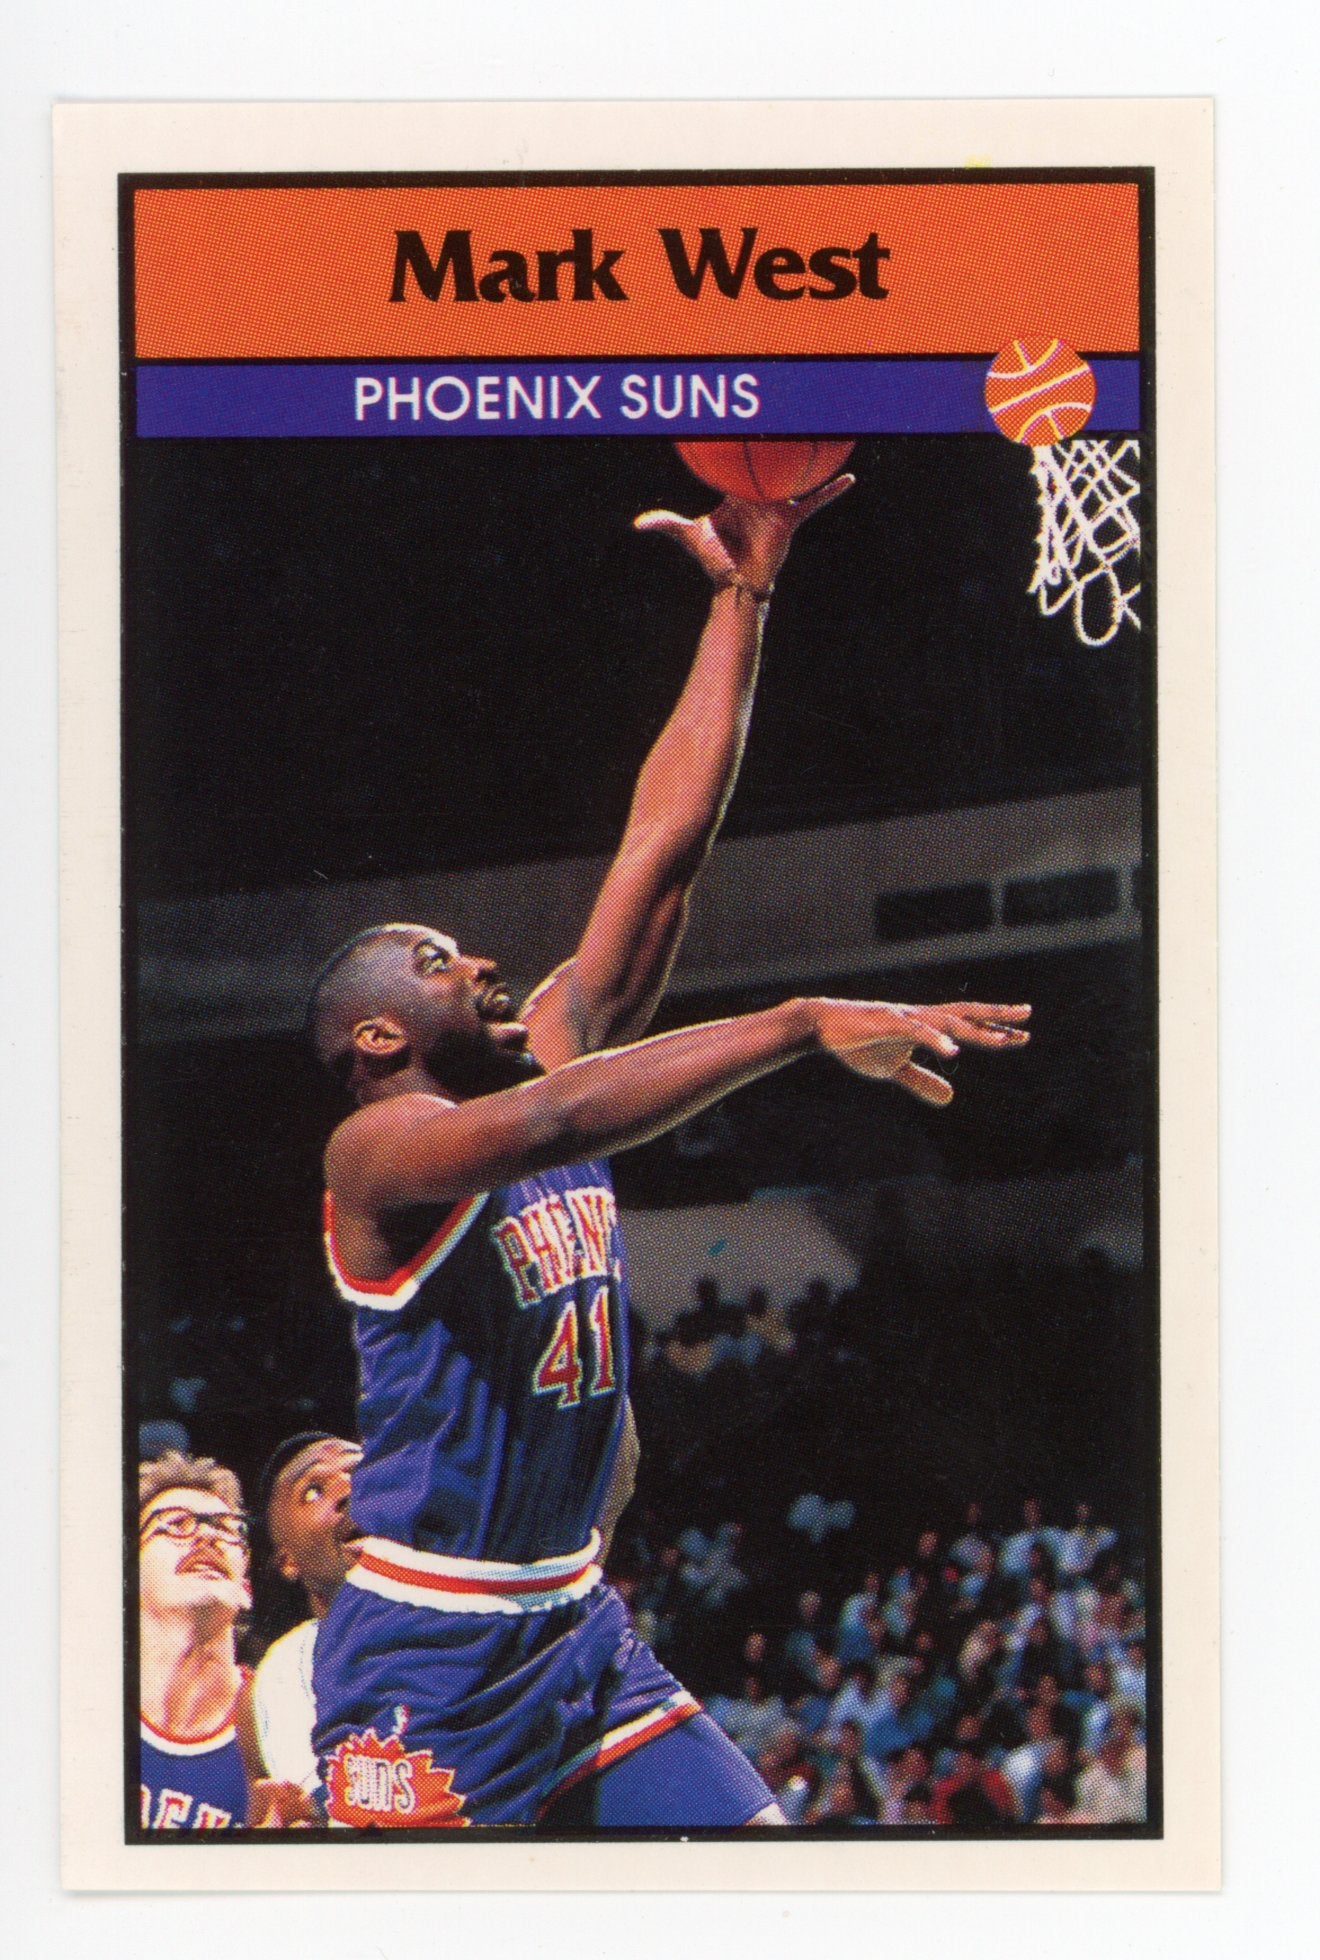 Mark West Panini 1992-1993 Basketball Sticker Phoenix Suns #43